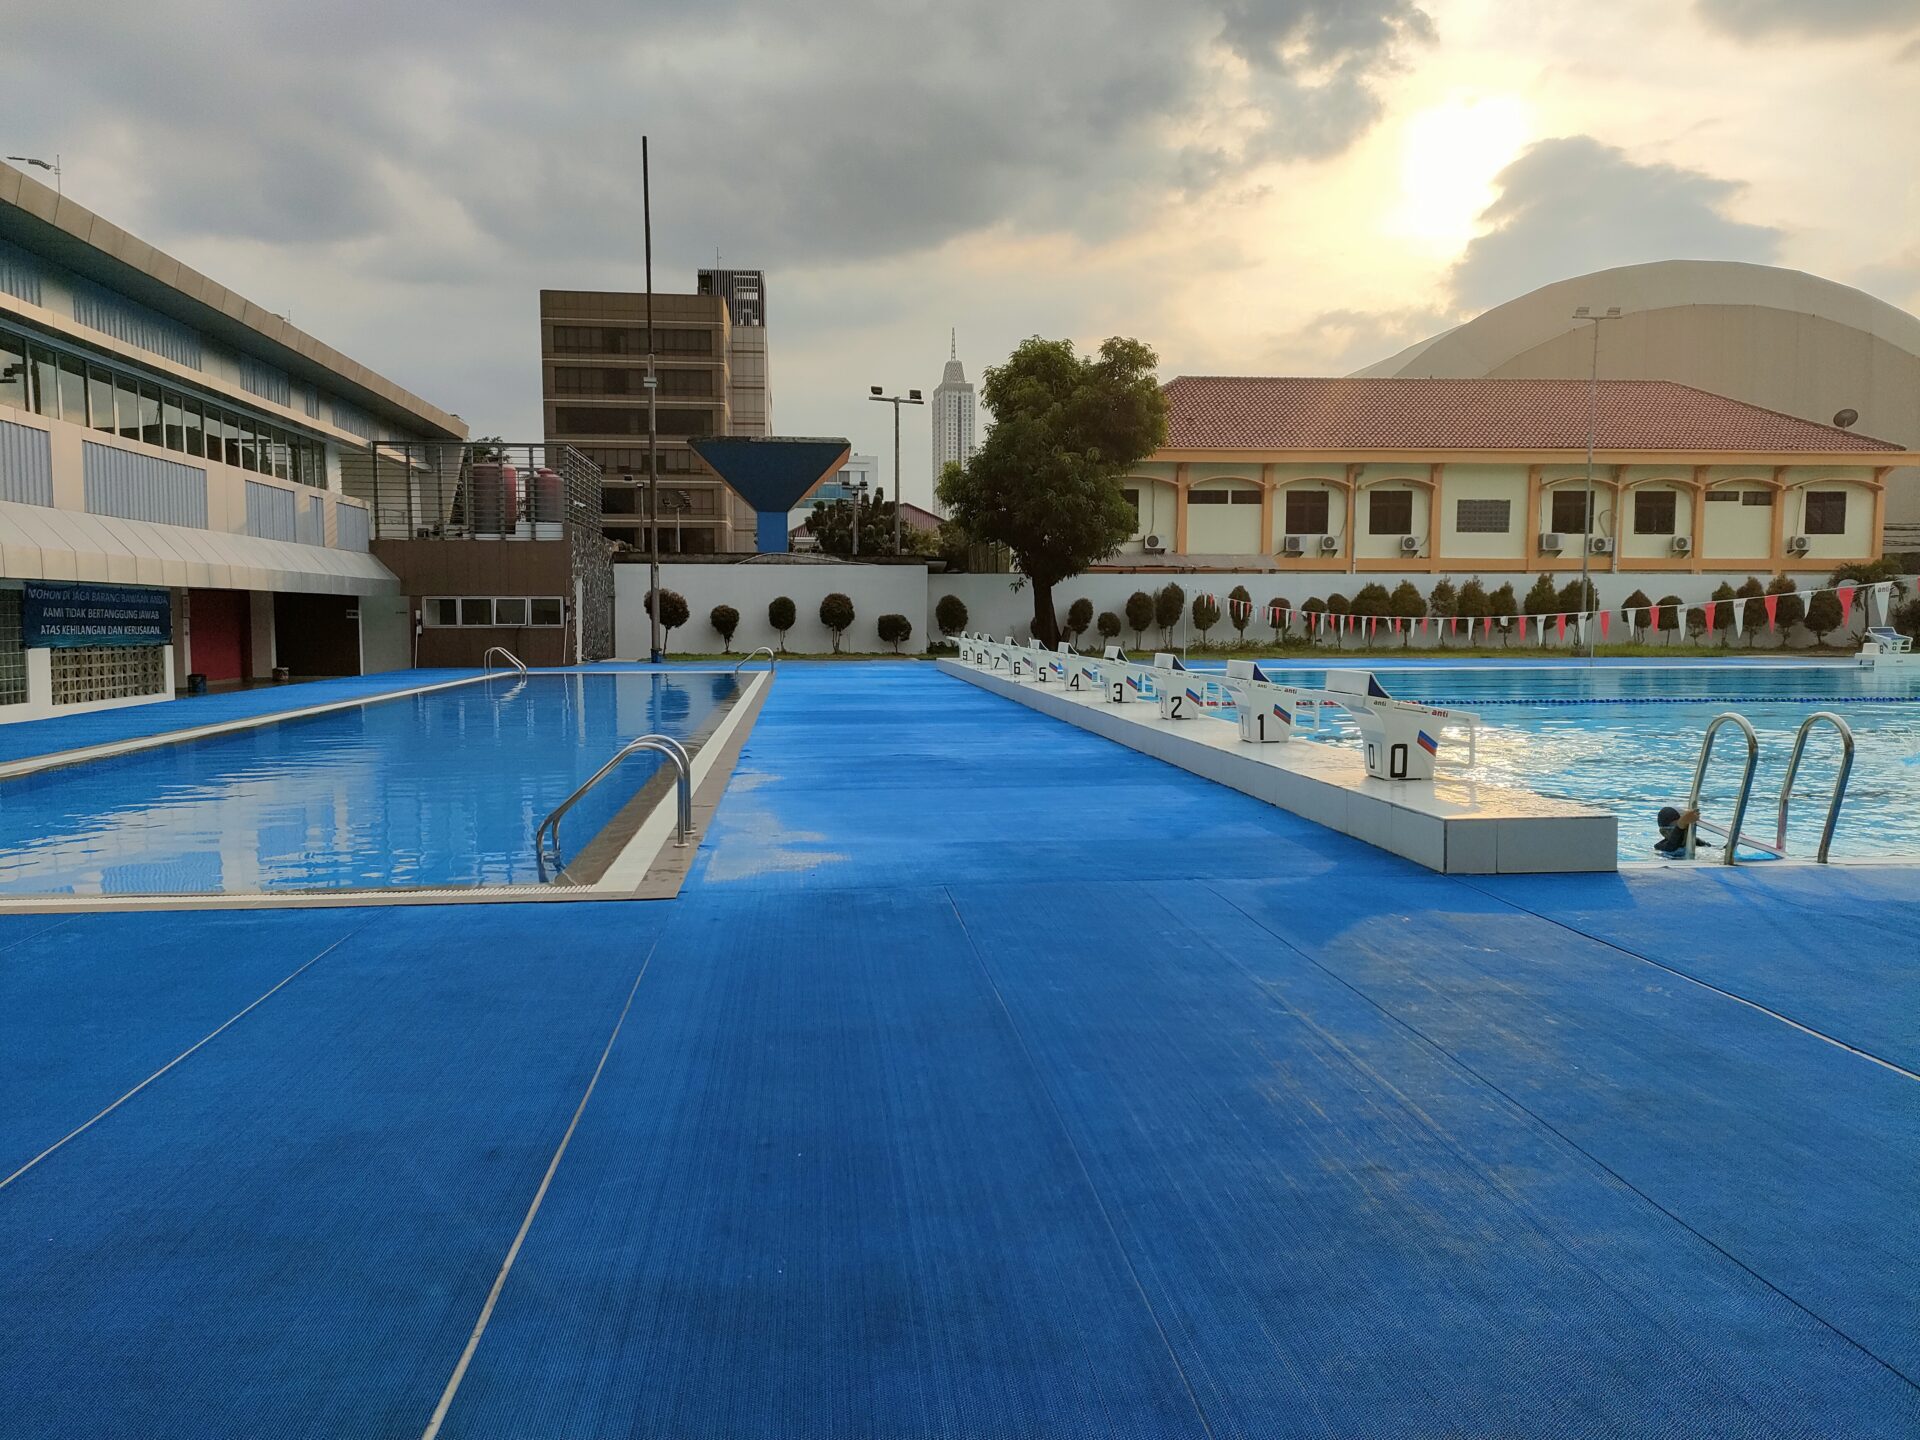 kolam renang jakarta selatan 7 Kolam Renang Jakarta Selatan Yang Lagi Hits, Fasilitasnya Bikin Betah!